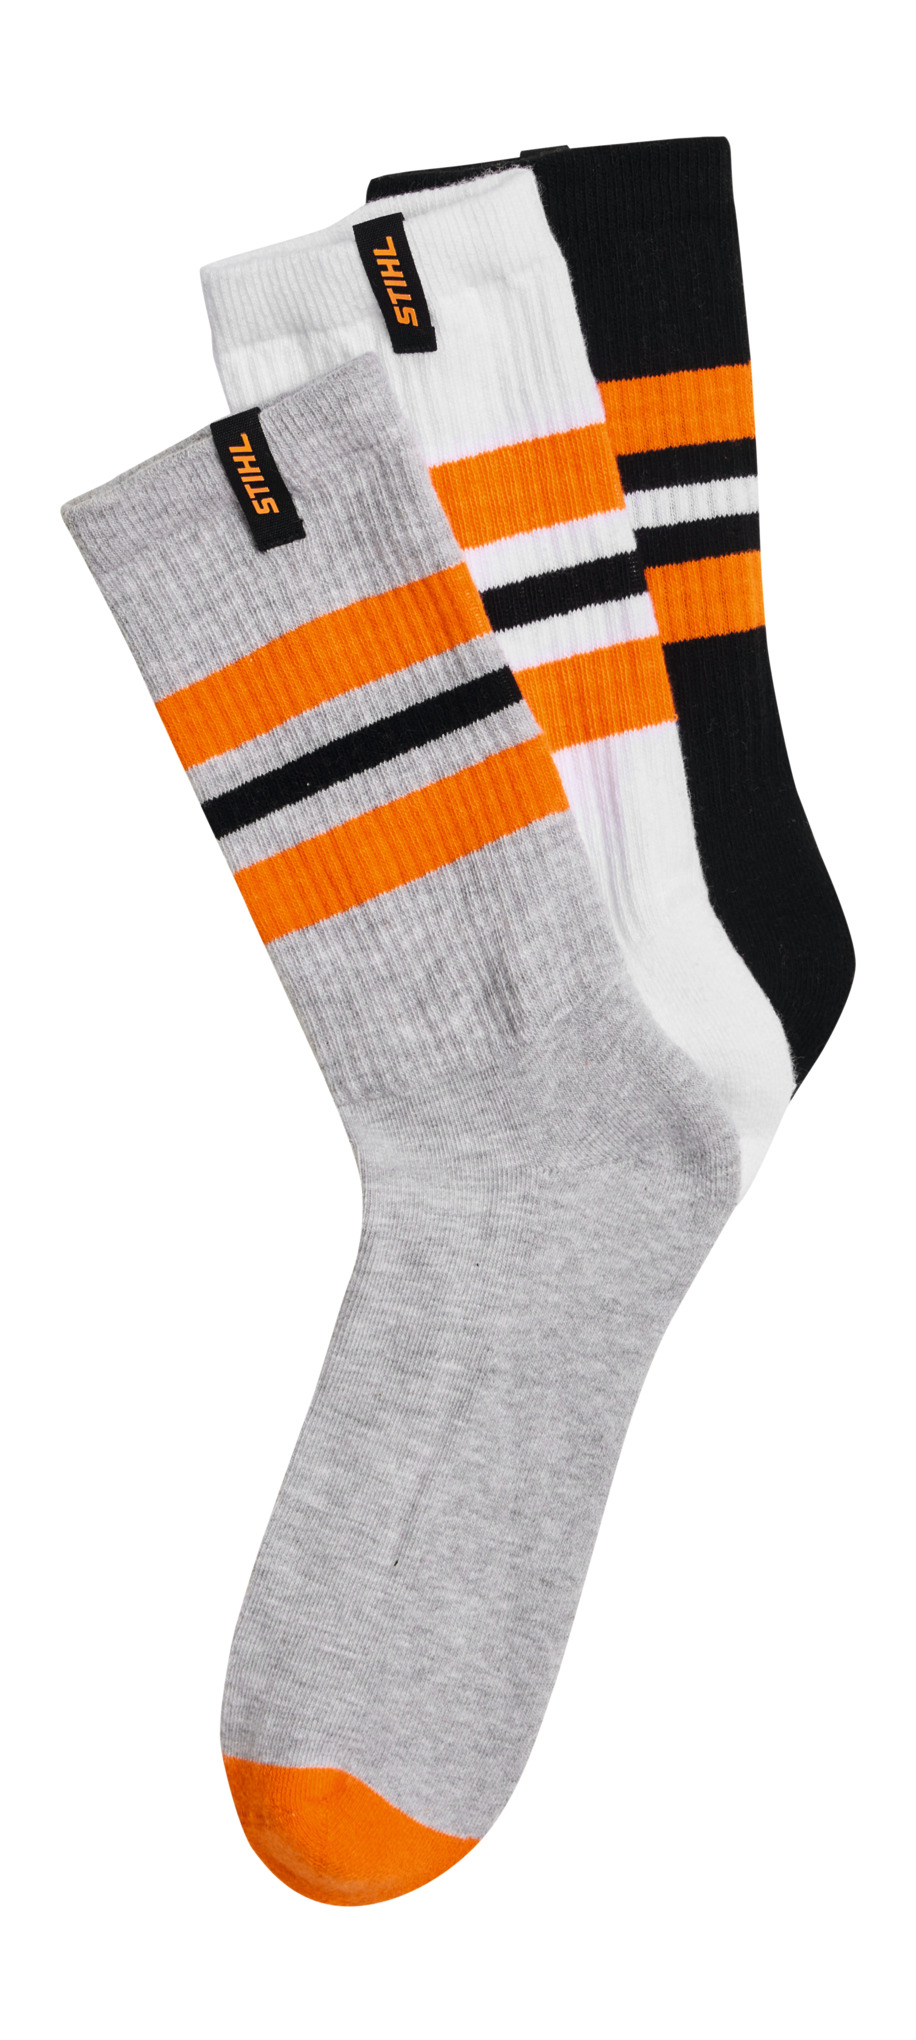 Socken STRIPES 3er Set Schwarz / Weiß / Grau kaufen | STIHL